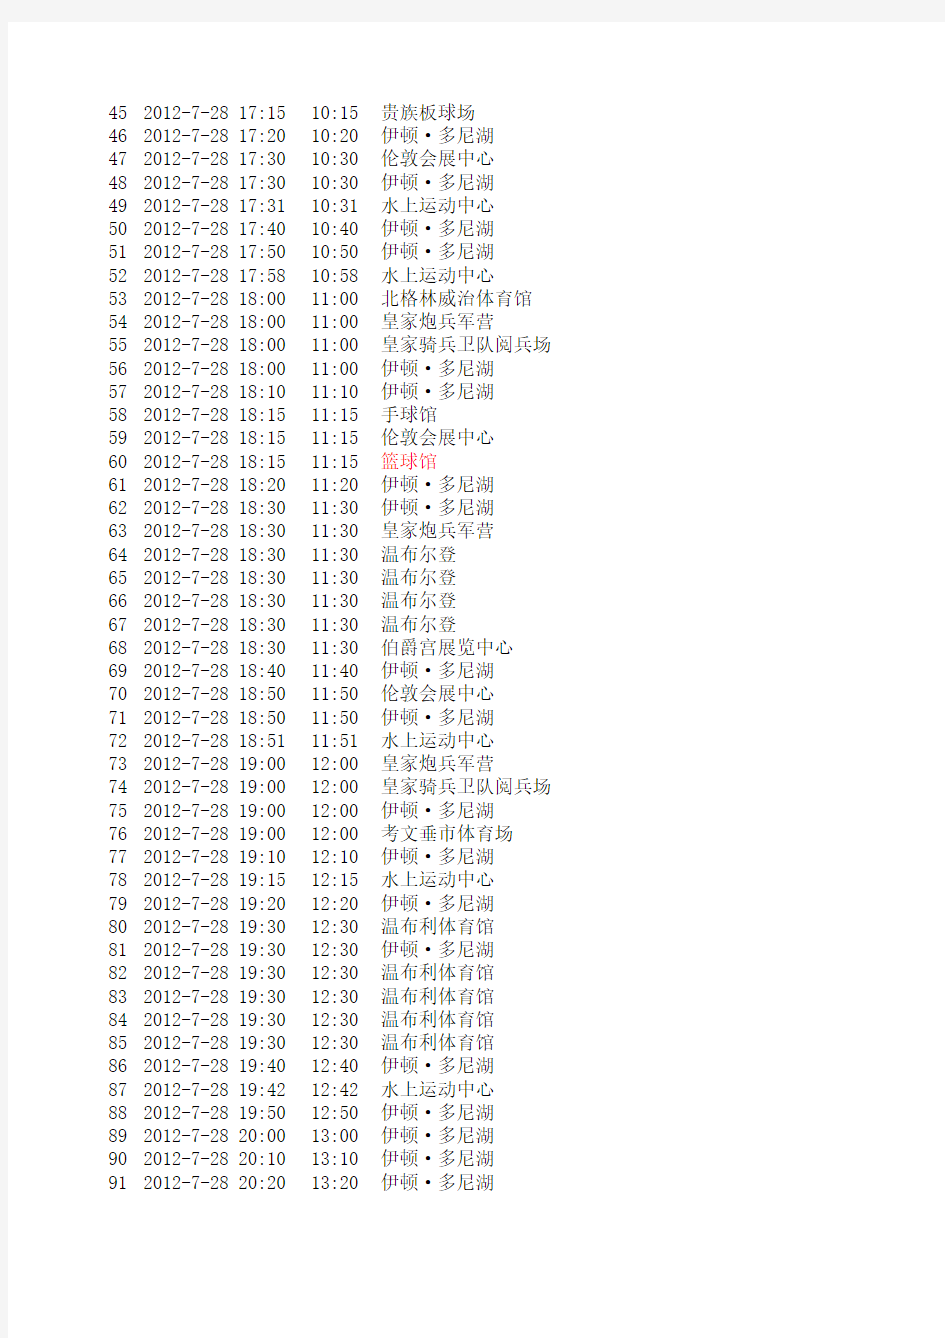 2012年伦敦奥运会比赛日程表完整版(北京时间)